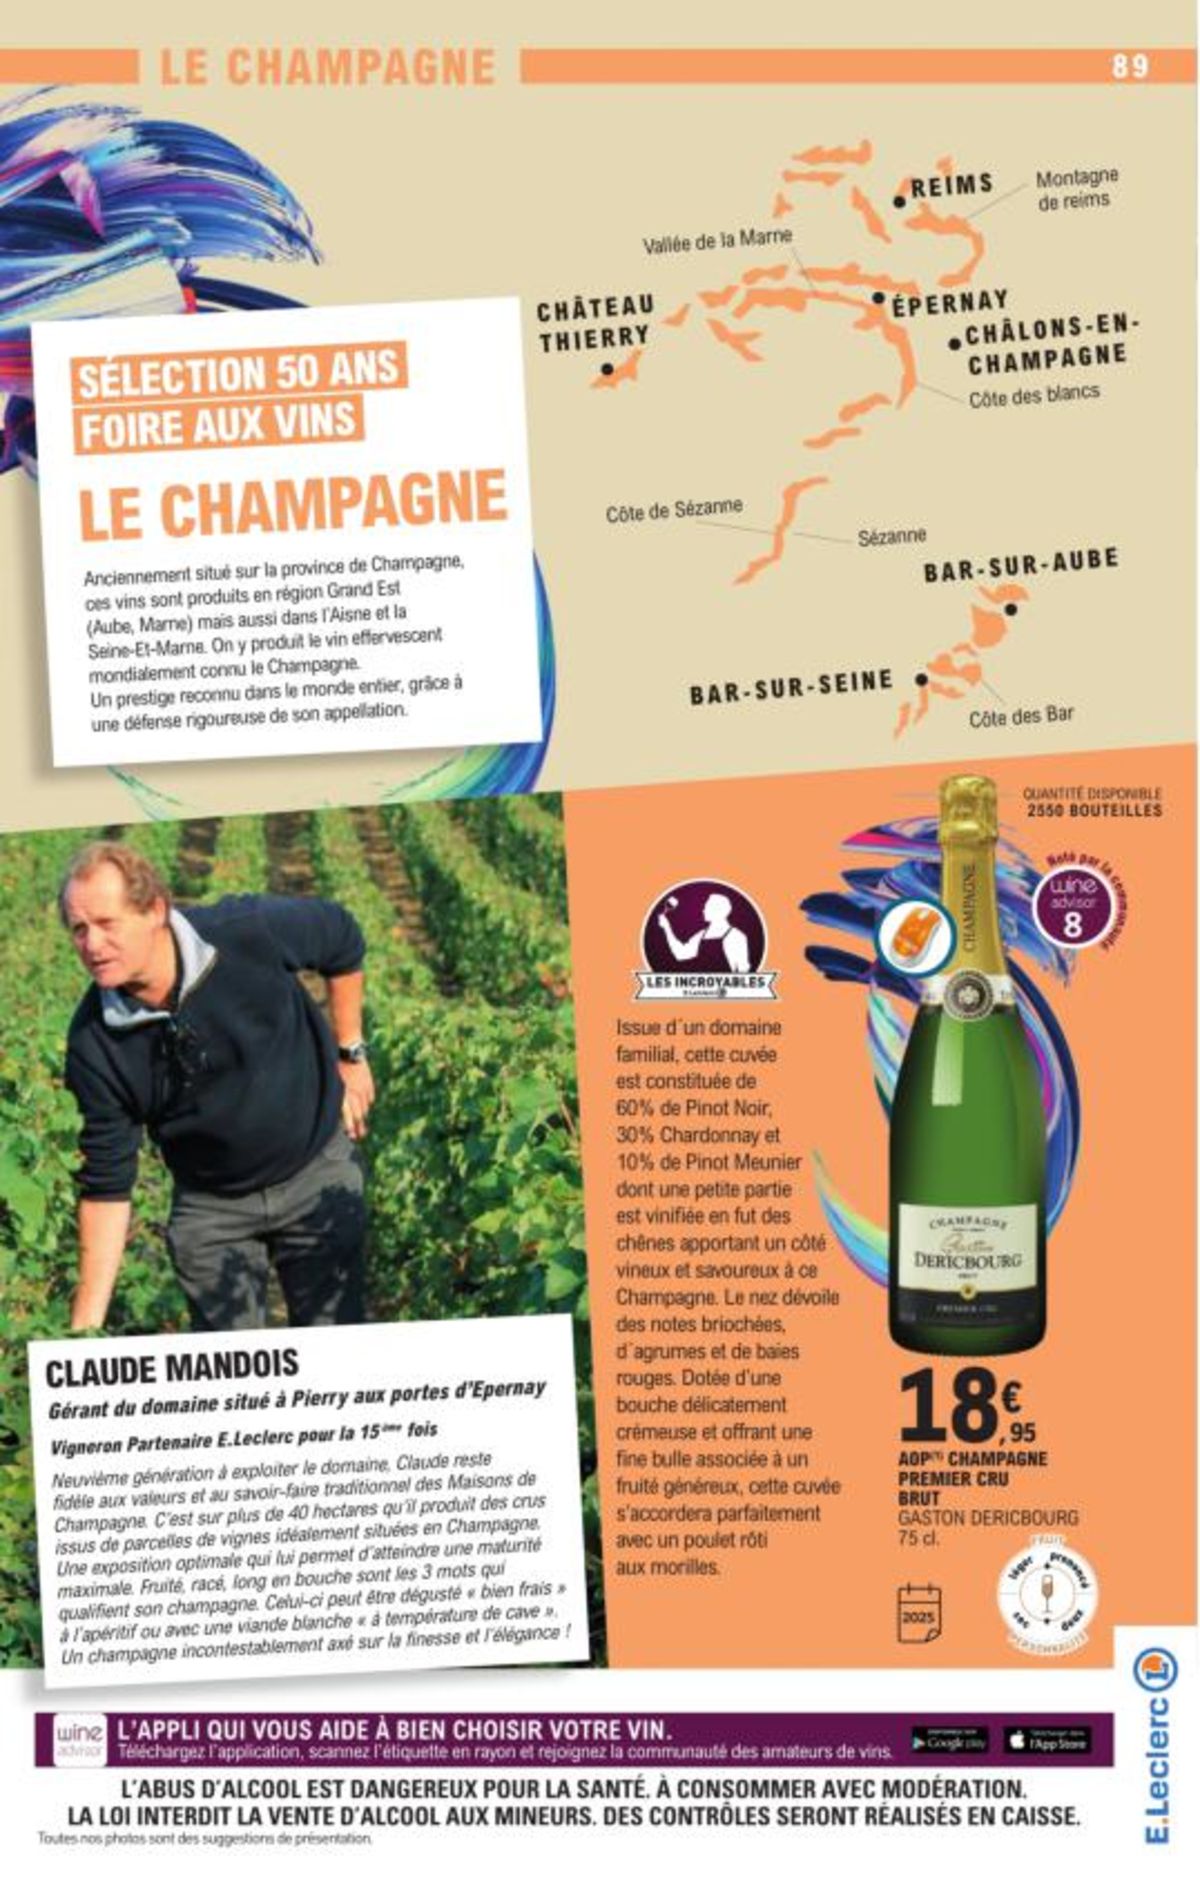 Catalogue Foire Aux Vins - Mixte, page 02971